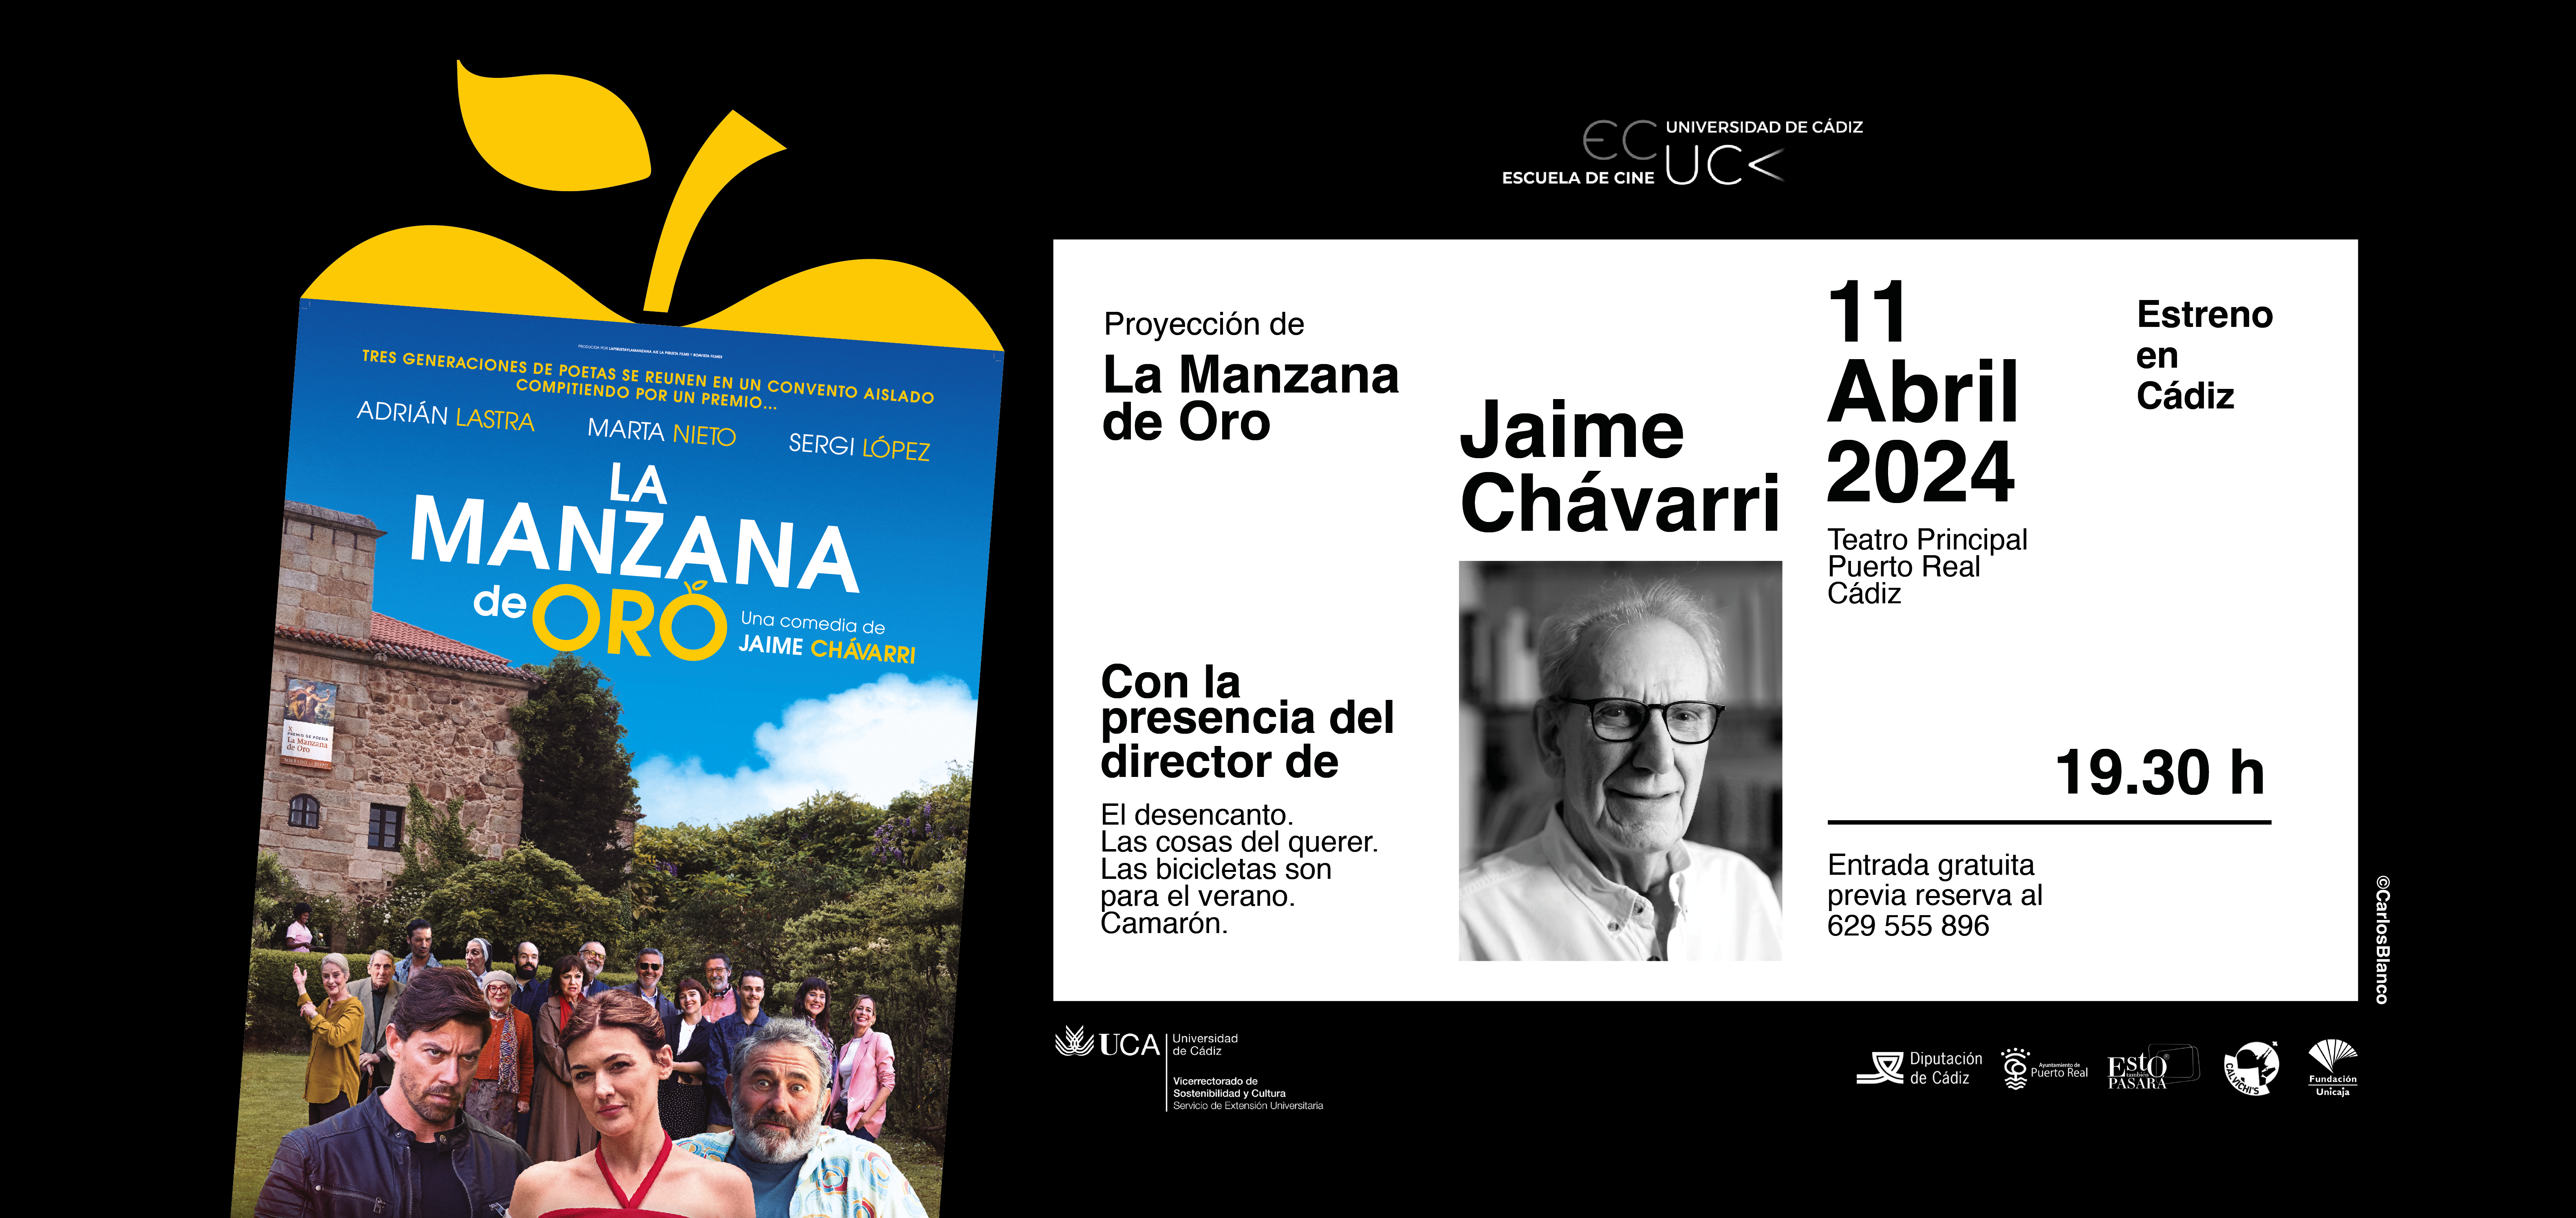 Vuelve el programa Presencias Cinematográficas de la UCA de la mano del director Jaime Chávarri